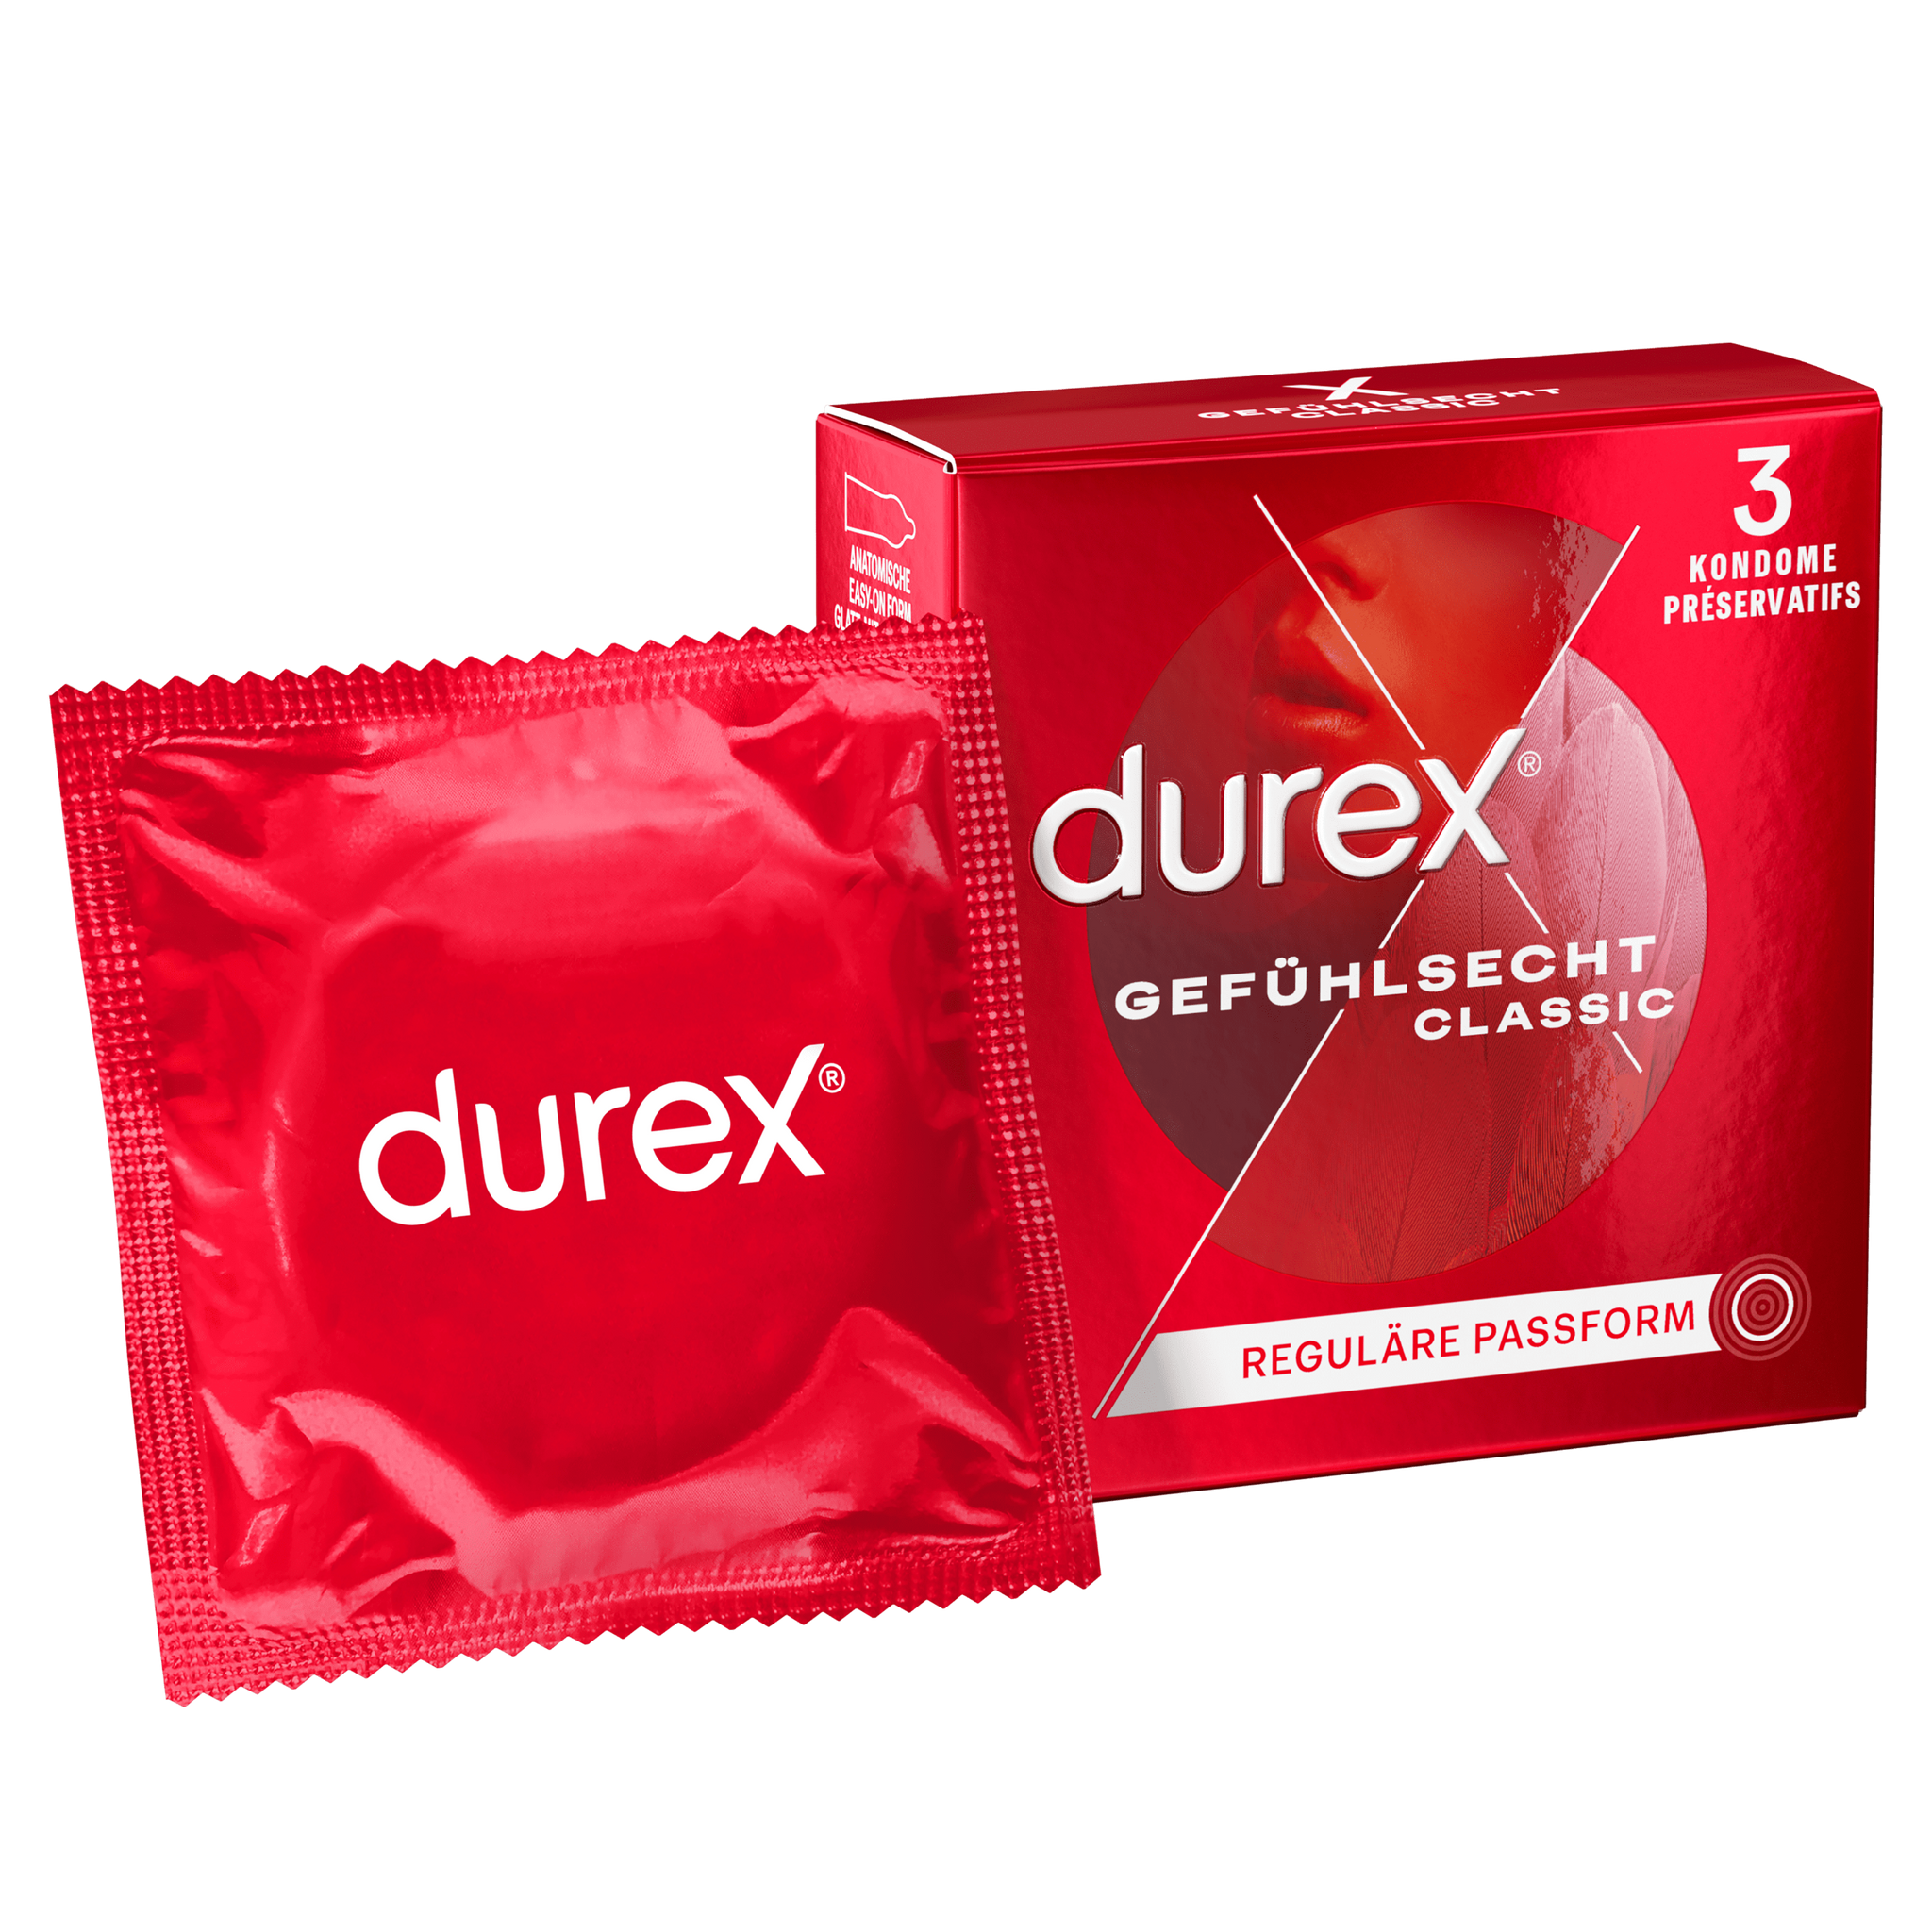 Durex DE - Gefuhlsecht 3 Kondome